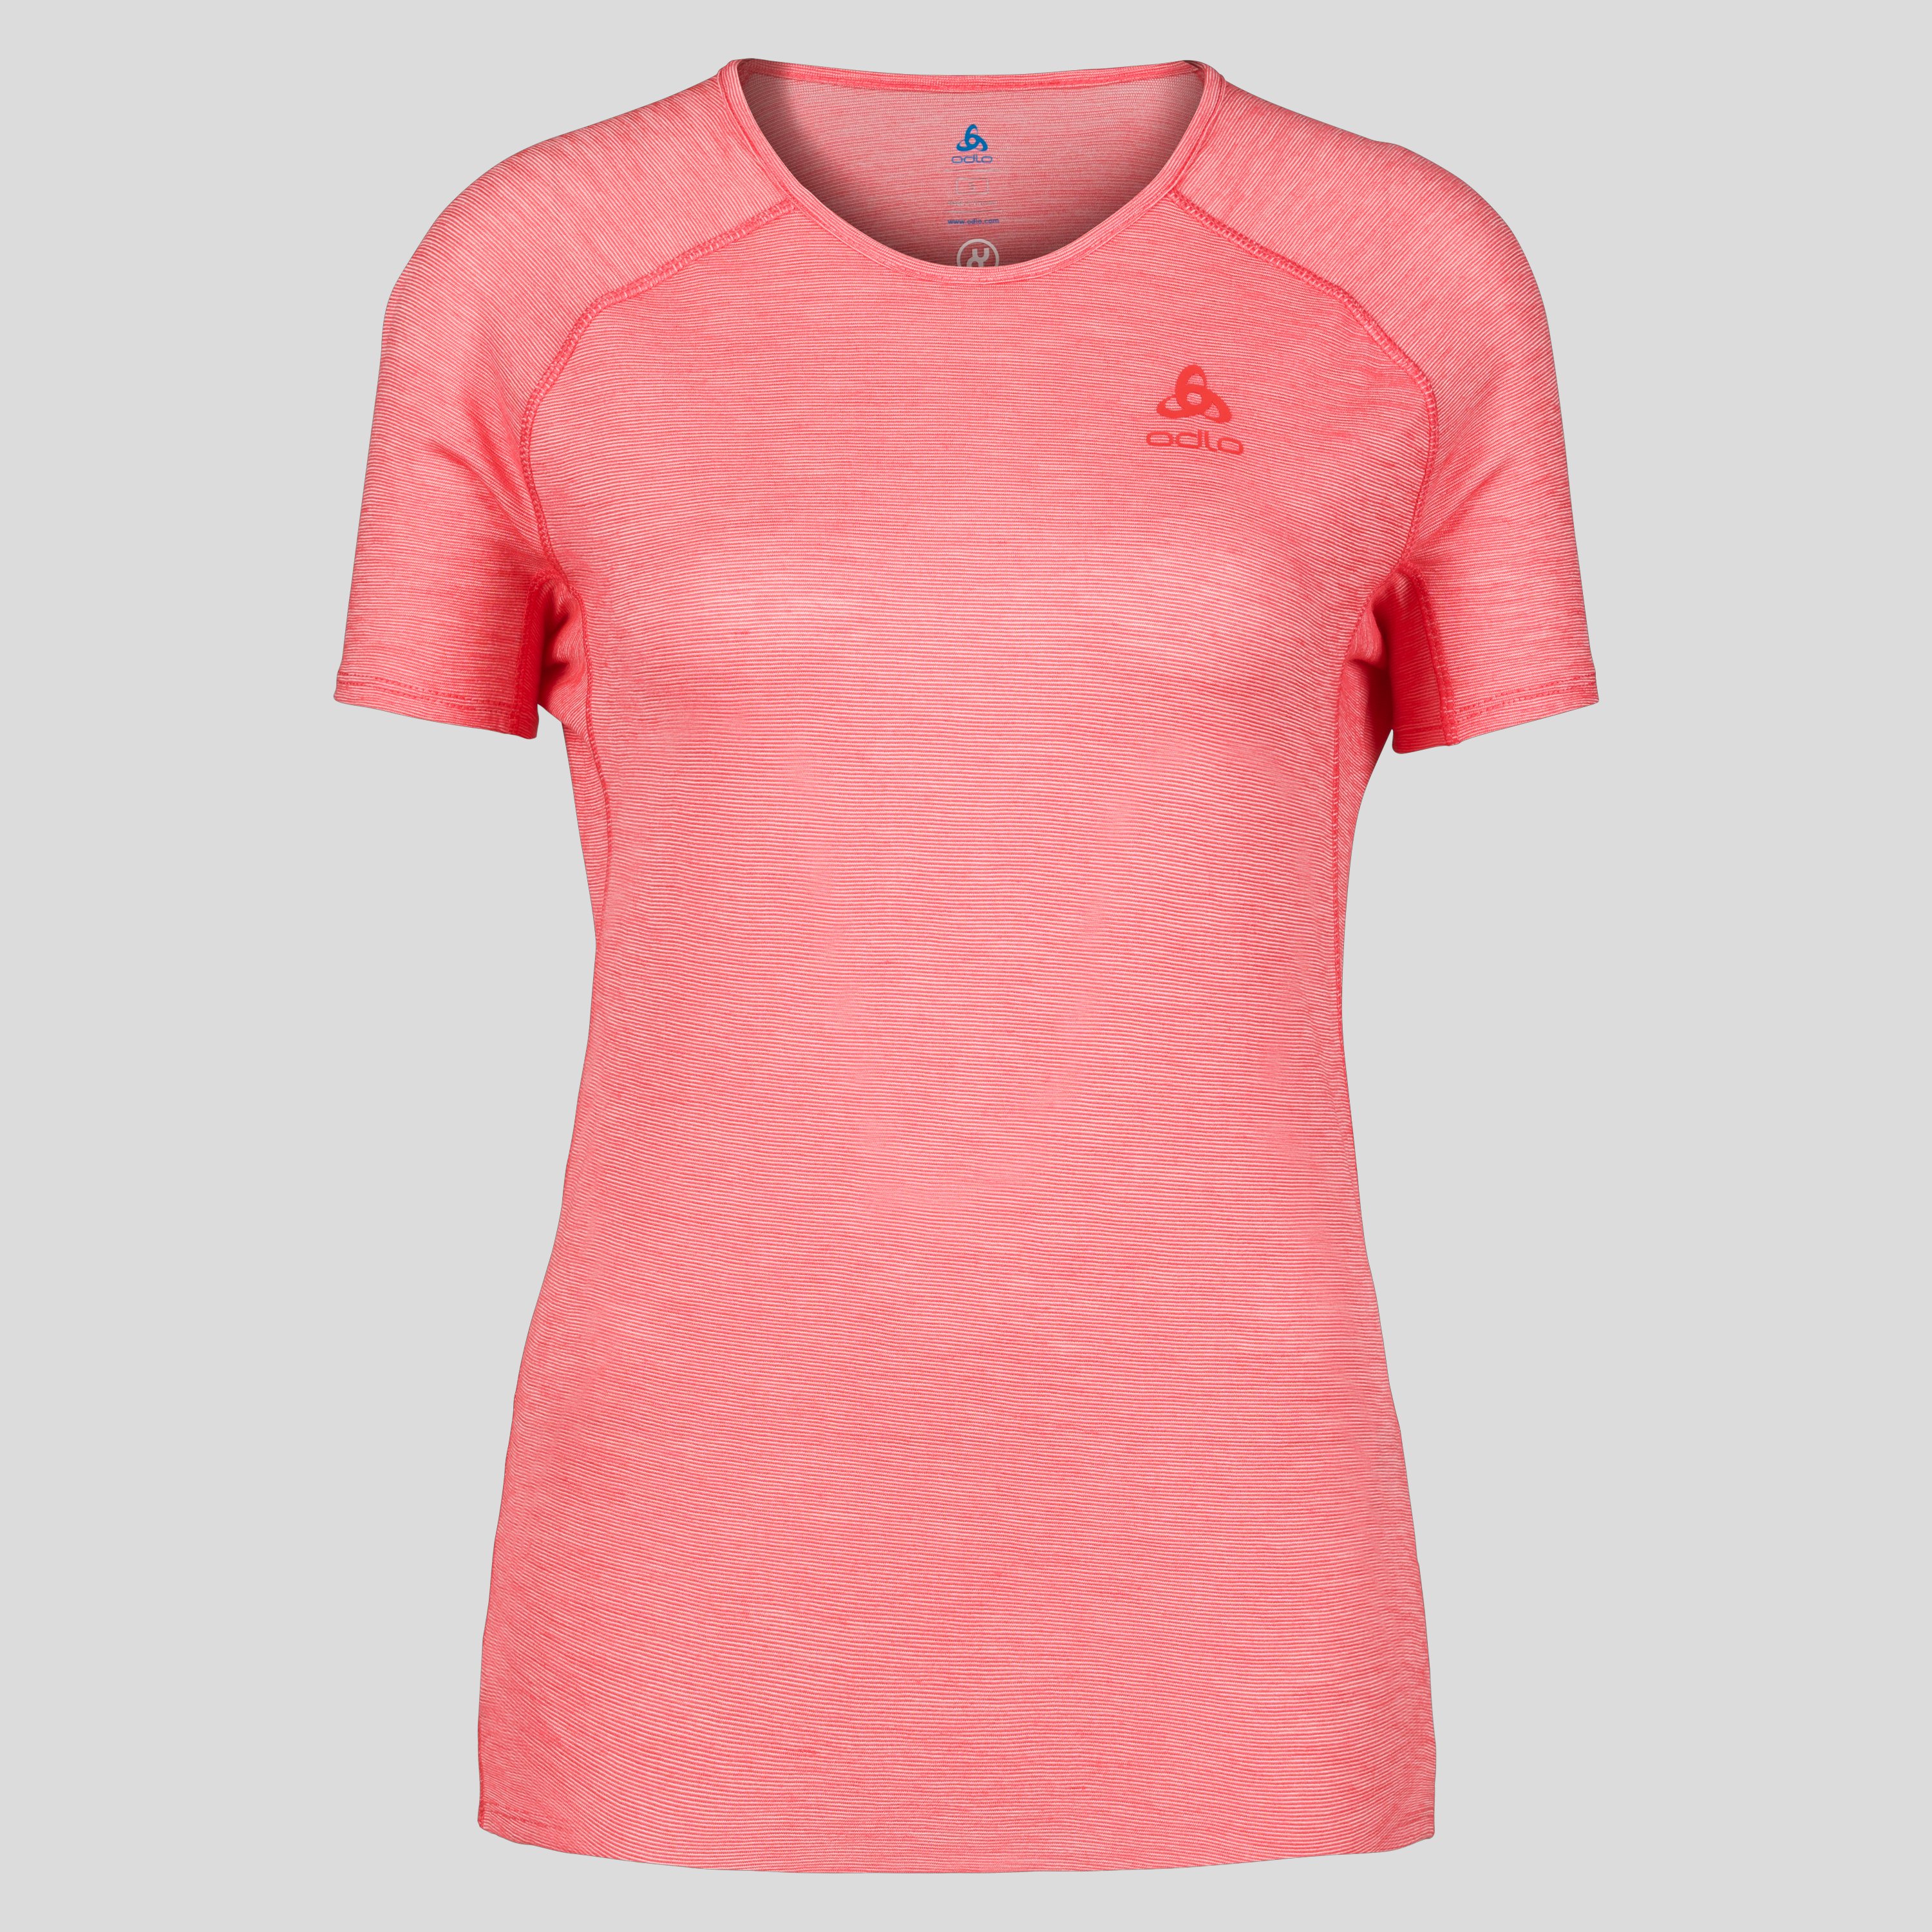 ODLO X-Alp Performance Wool 115 Trailrunning-Shirt für Damen, M, rot